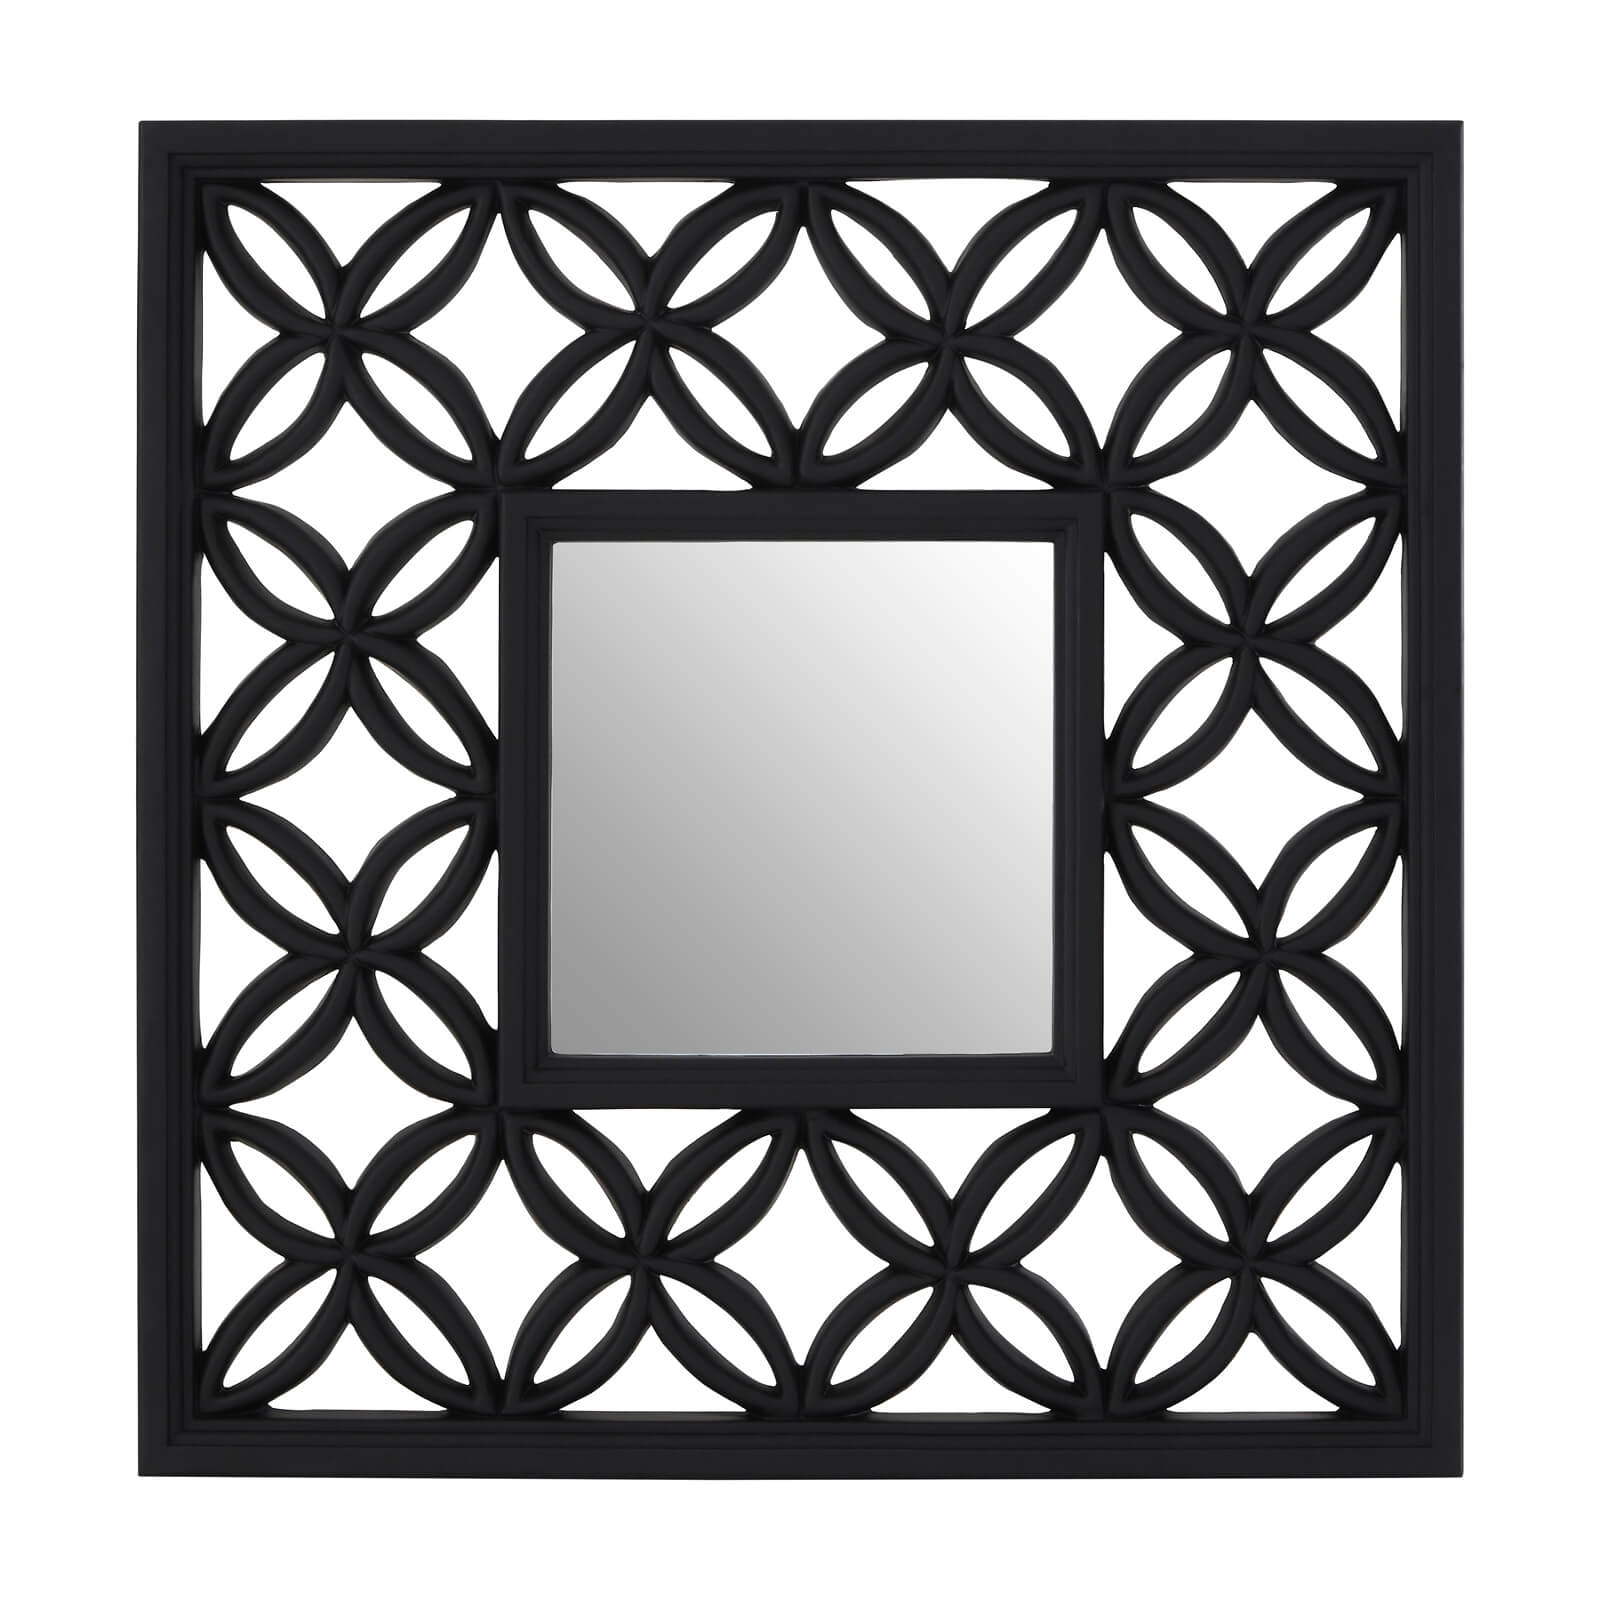 Square Black Lattice Frame Wall Mirror